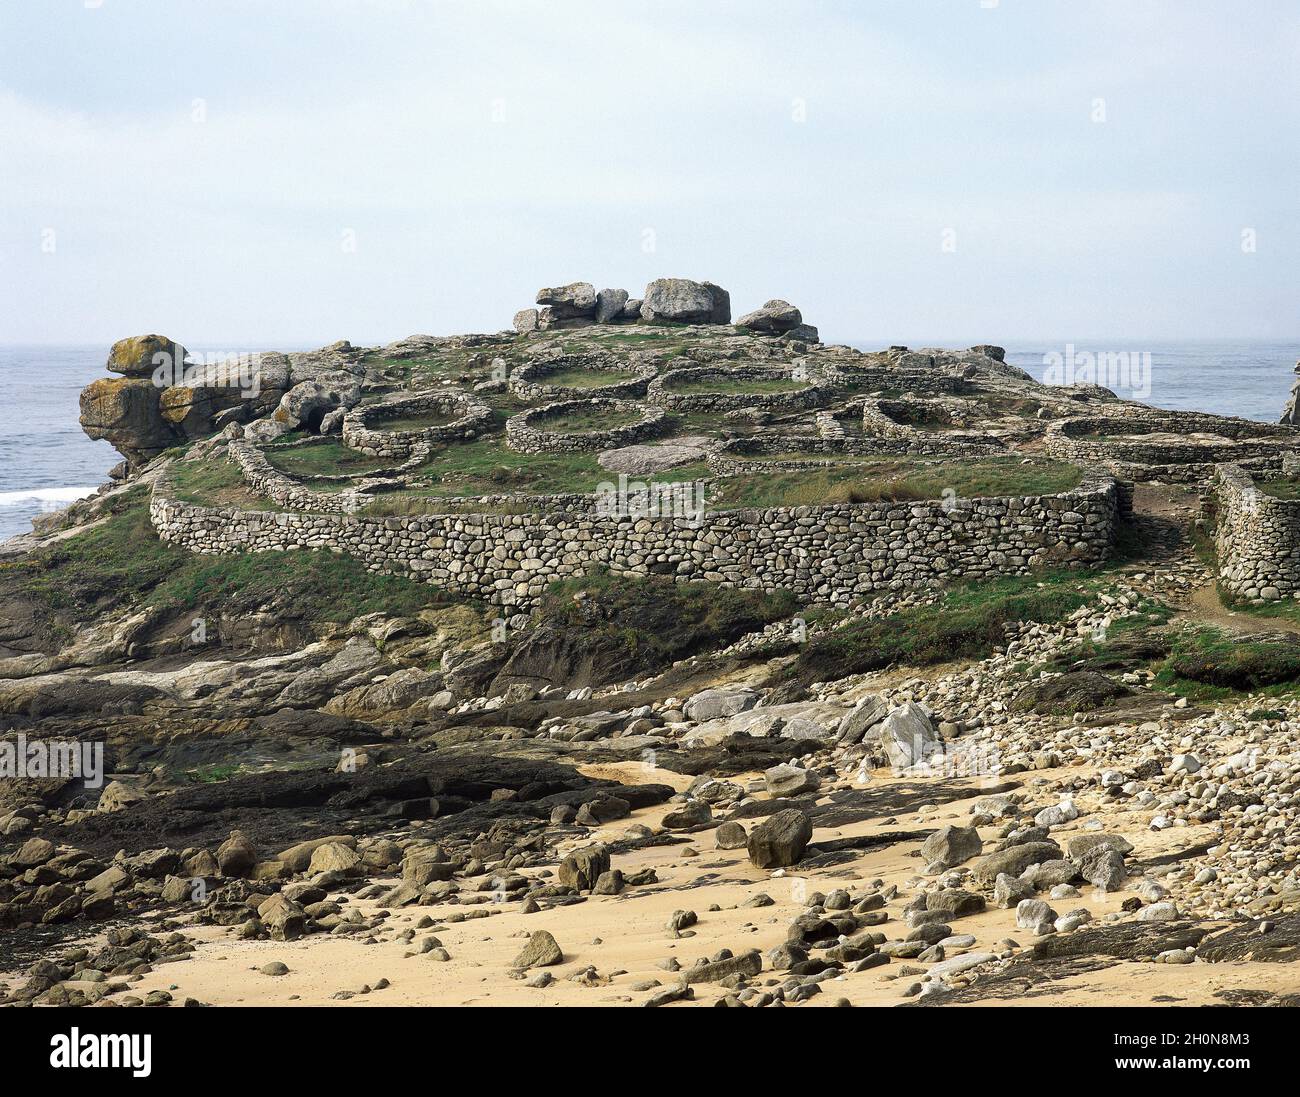 Castro von Baroña. Eiszeitliche Siedlung, 1. Jahrhundert v. Chr. - 1. Jahrhundert n. Chr. Galicien, Provinz La Coruña, Spanien. Stockfoto